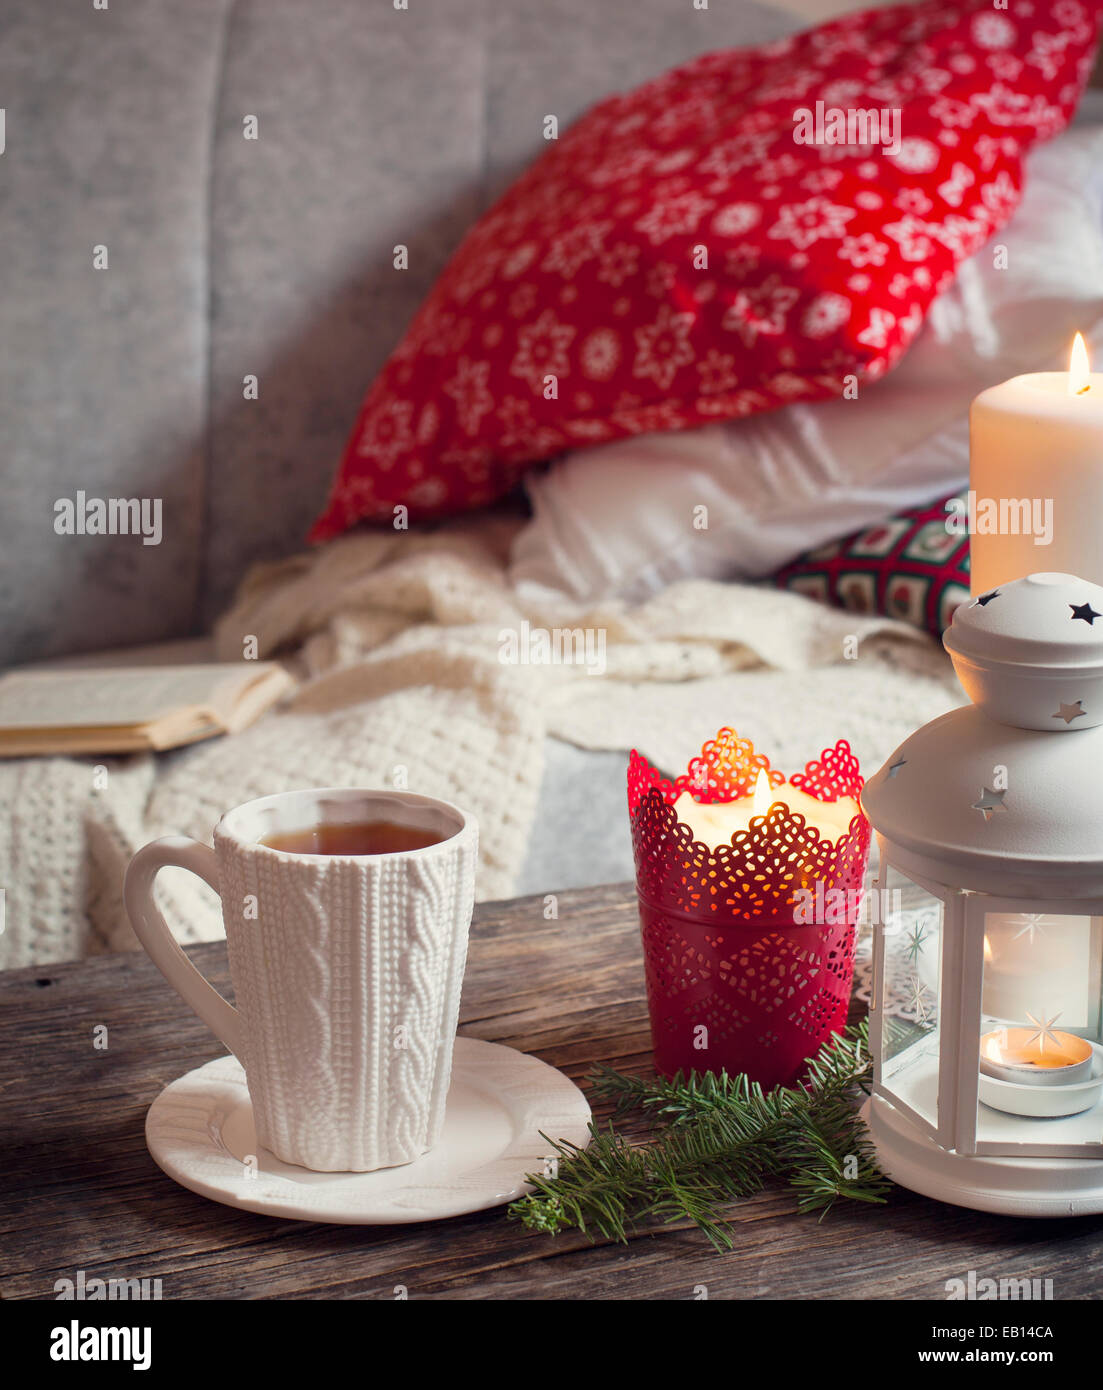 Stillleben-Interieur-Details, Tasse Tee, Kerzen neben dem Sofa mit Kissen  Stockfotografie - Alamy